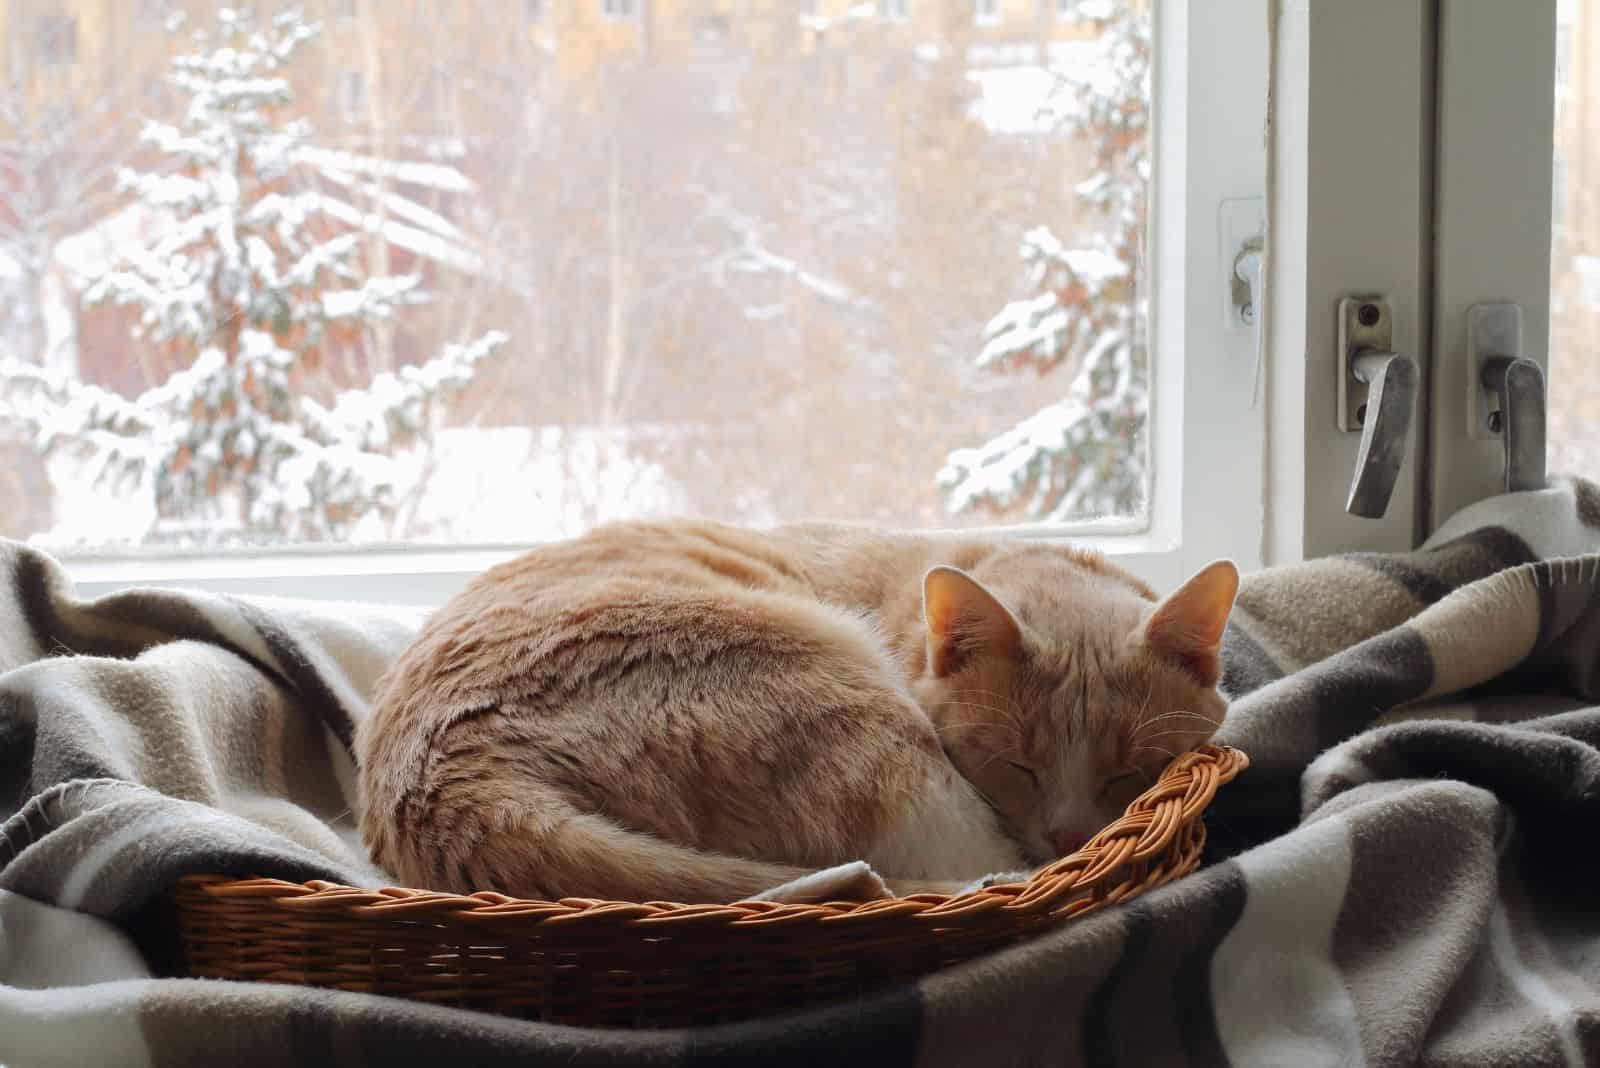 a beautiful cat sleeps in a basket